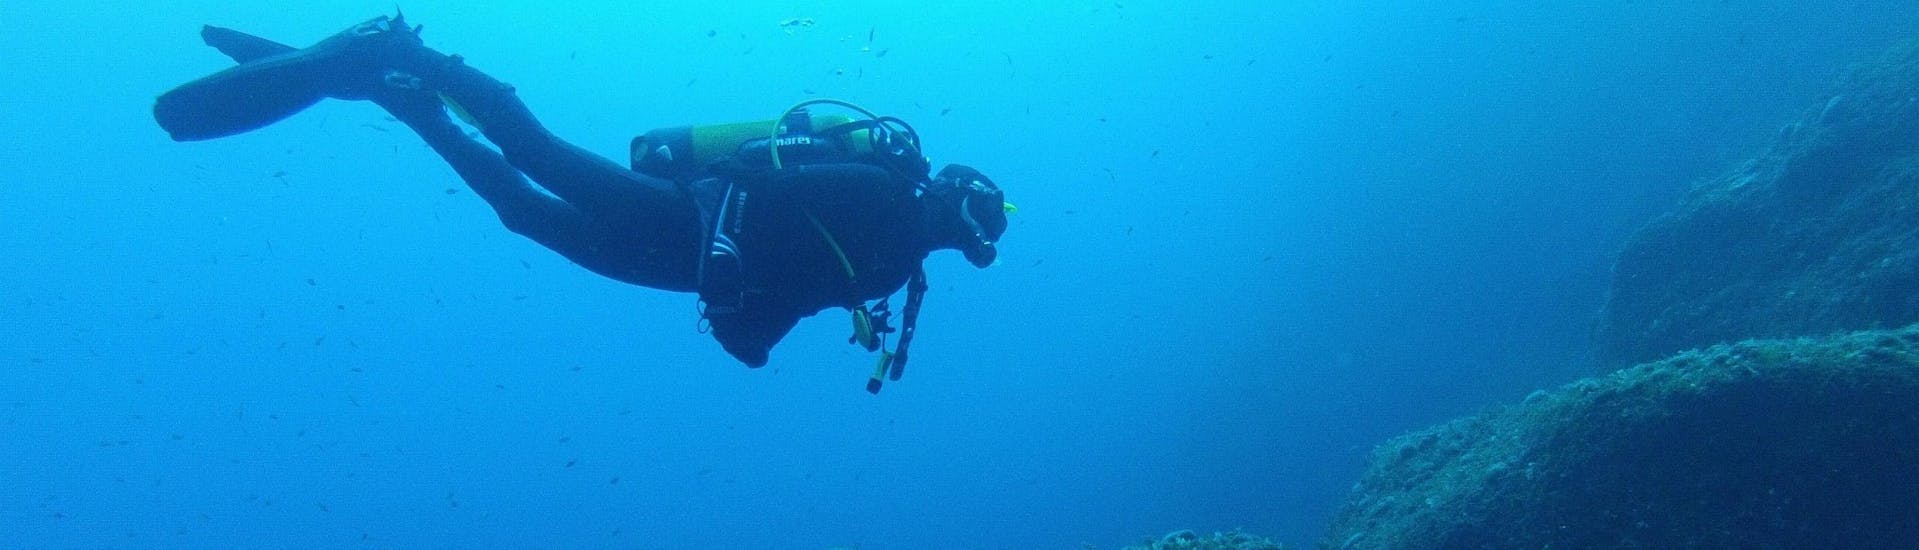 Formation plongée PADI Scuba Diver à Gozo pour Débutants.